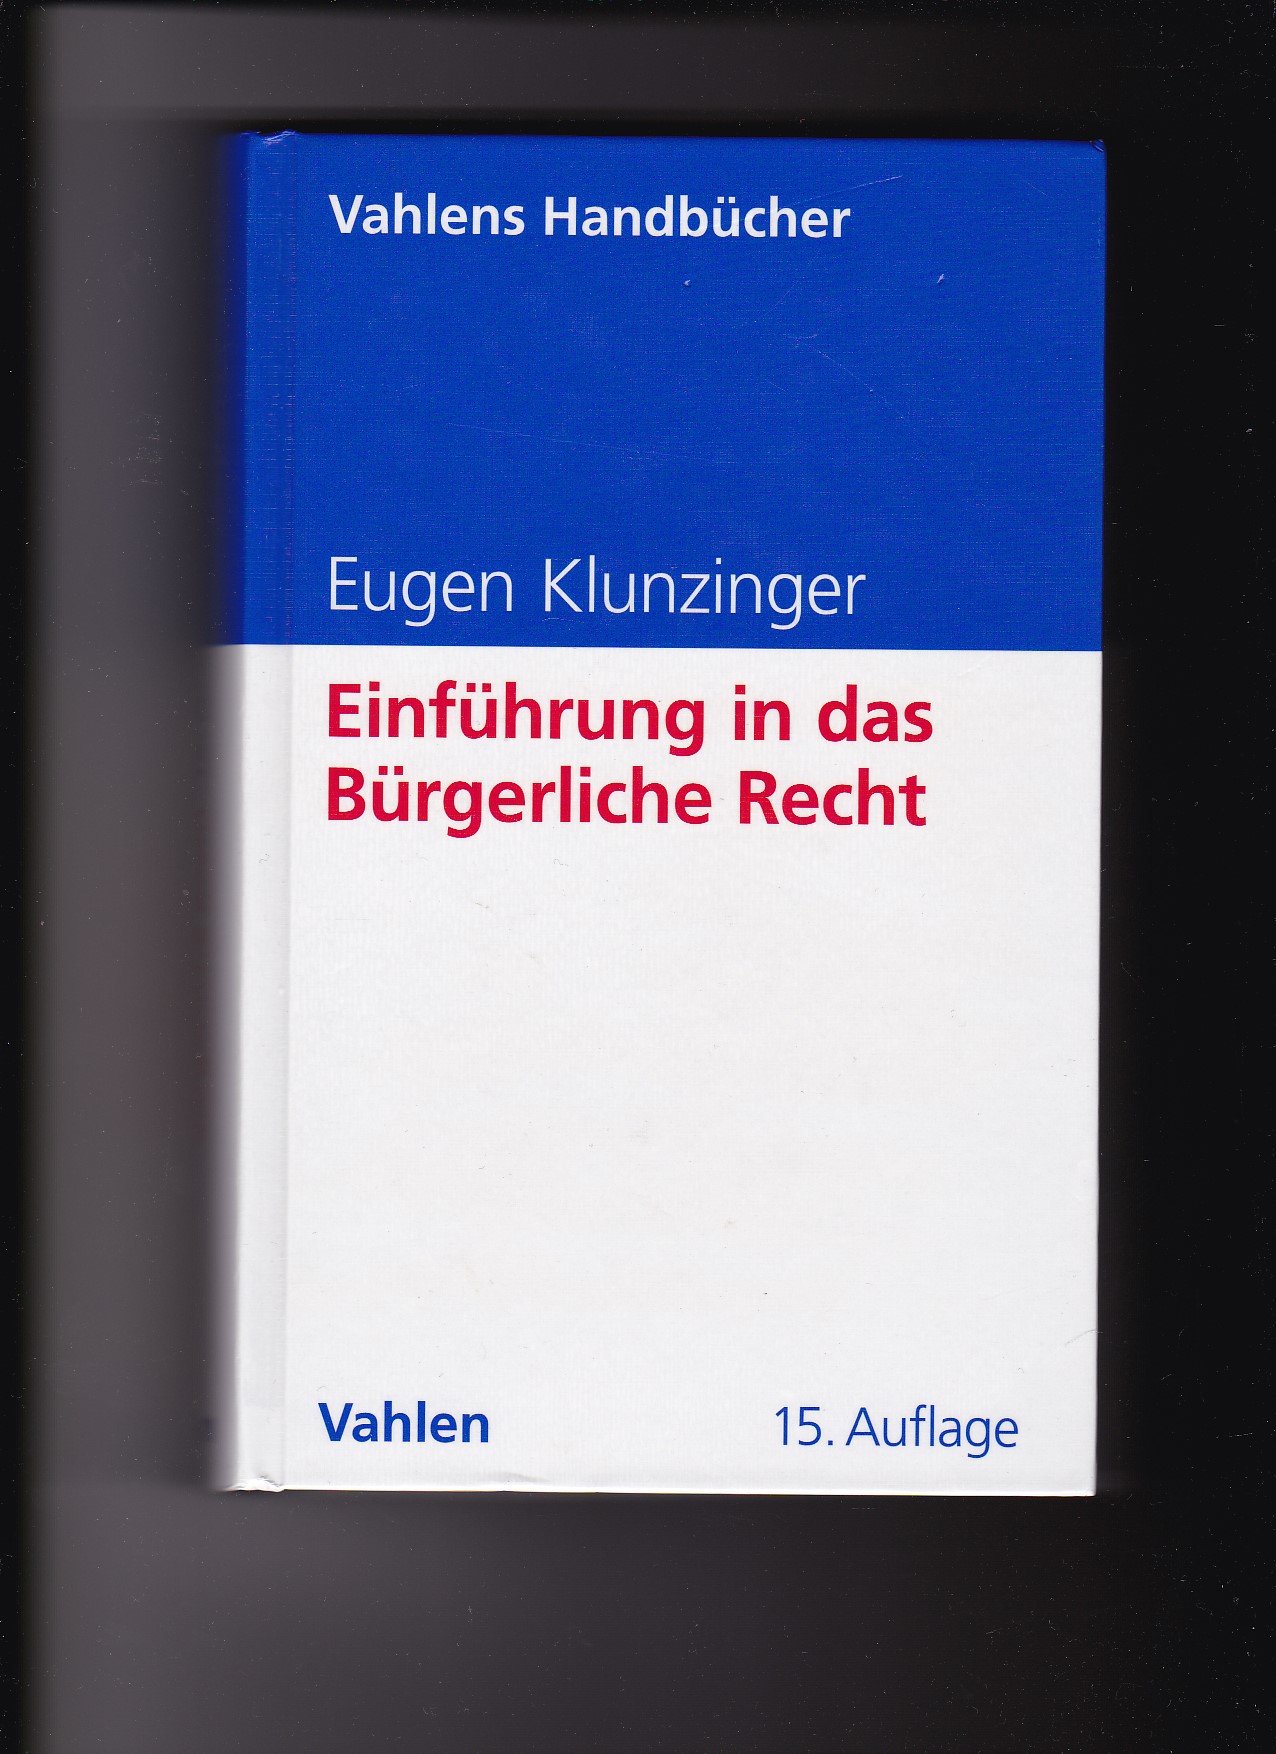 Eugen Klunzinger, Einführung in das Bürgerliche Recht / 15. Auflage  15. Auflage - Klunzinger, Eugen (Verfasser)